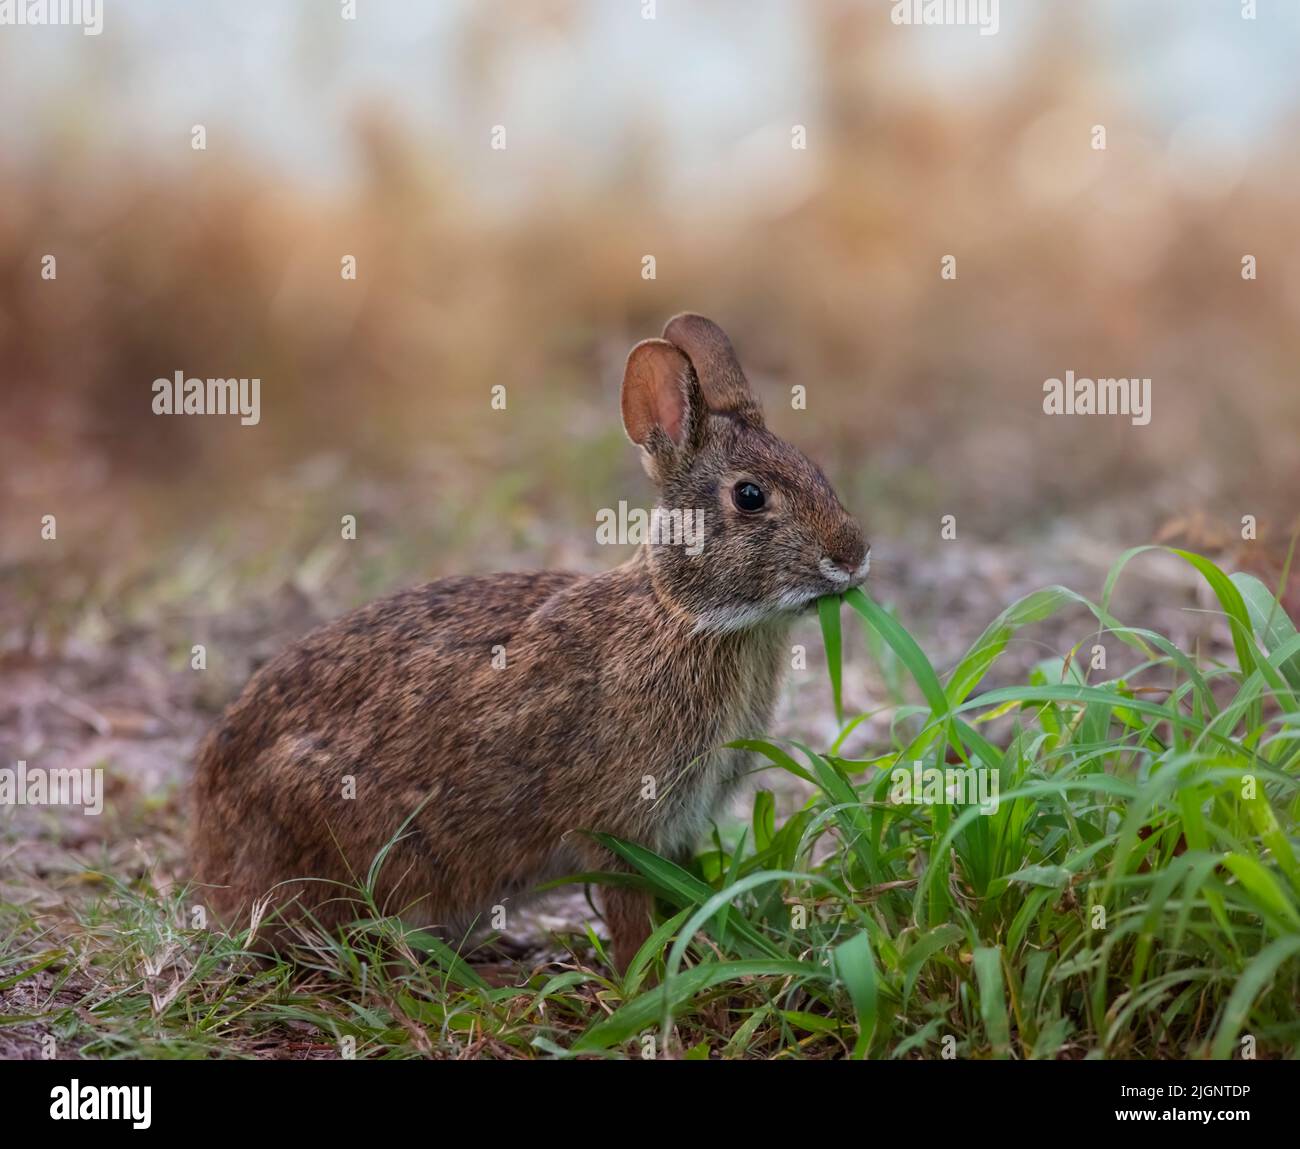 Marsh Rabbit se alimenta de hierba en los humedales de Florida Foto de stock